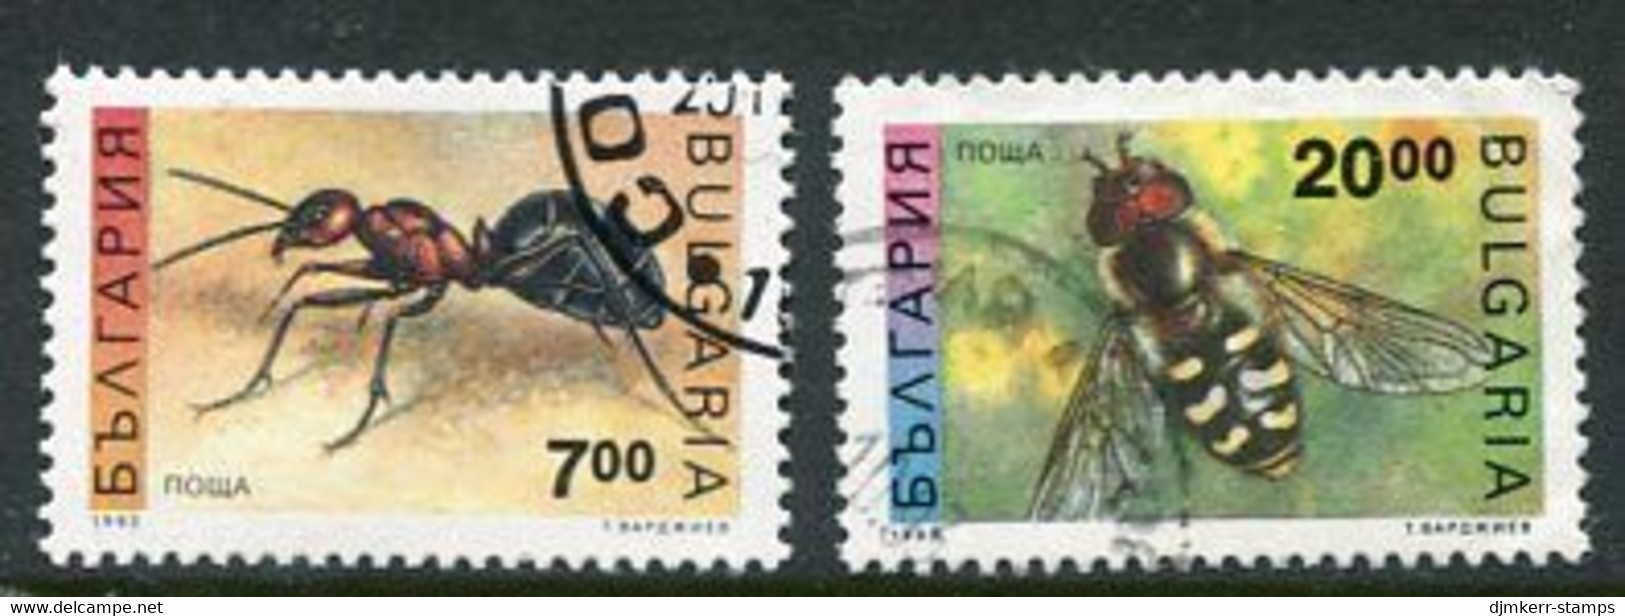 BULGARIA 1992 Insect Definitive 7, 20 L. Used.  Michel 3998-99 - Usati